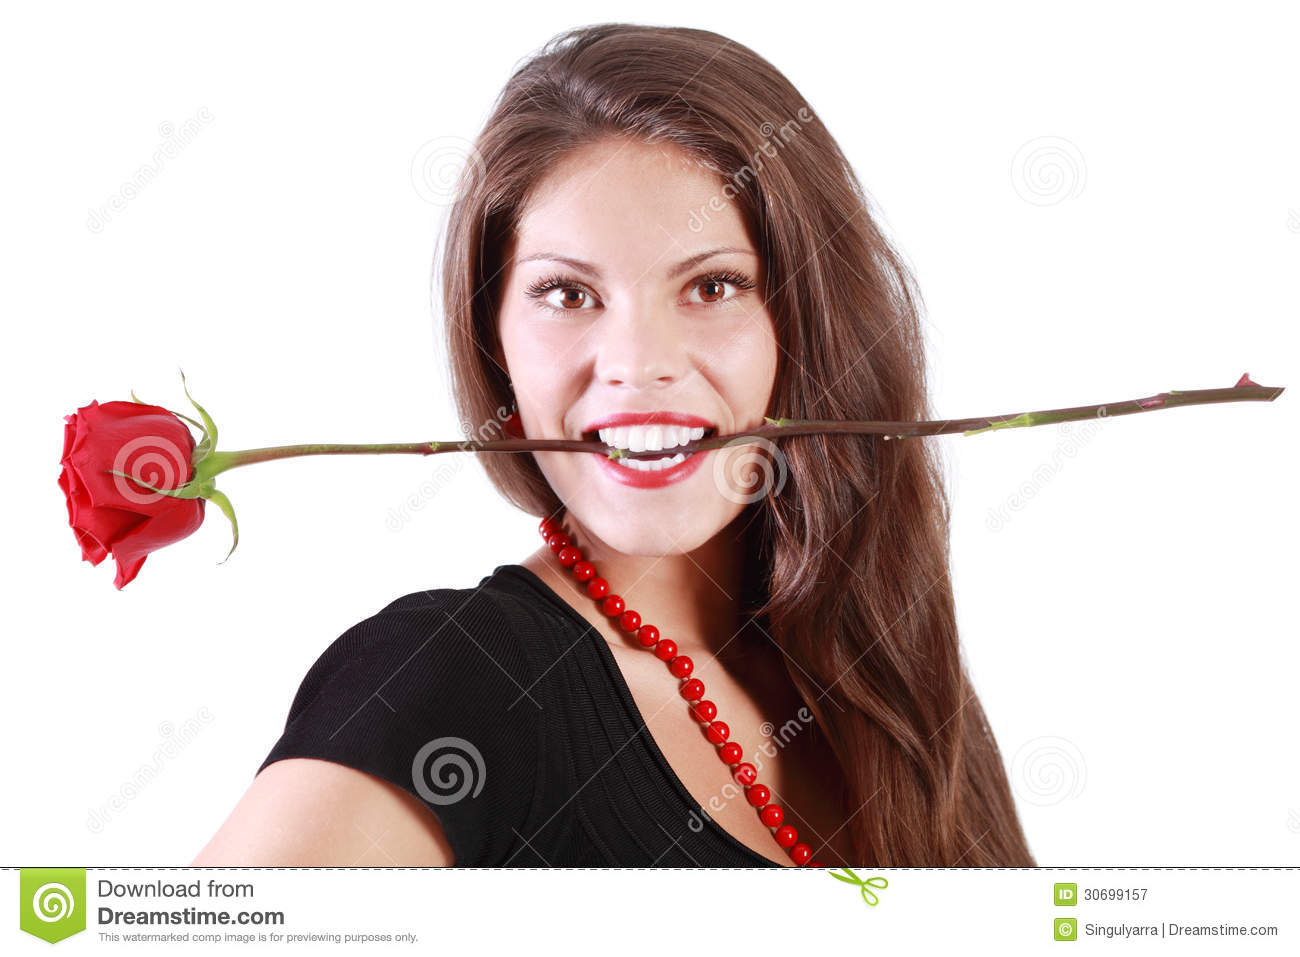 роза в зубах фото